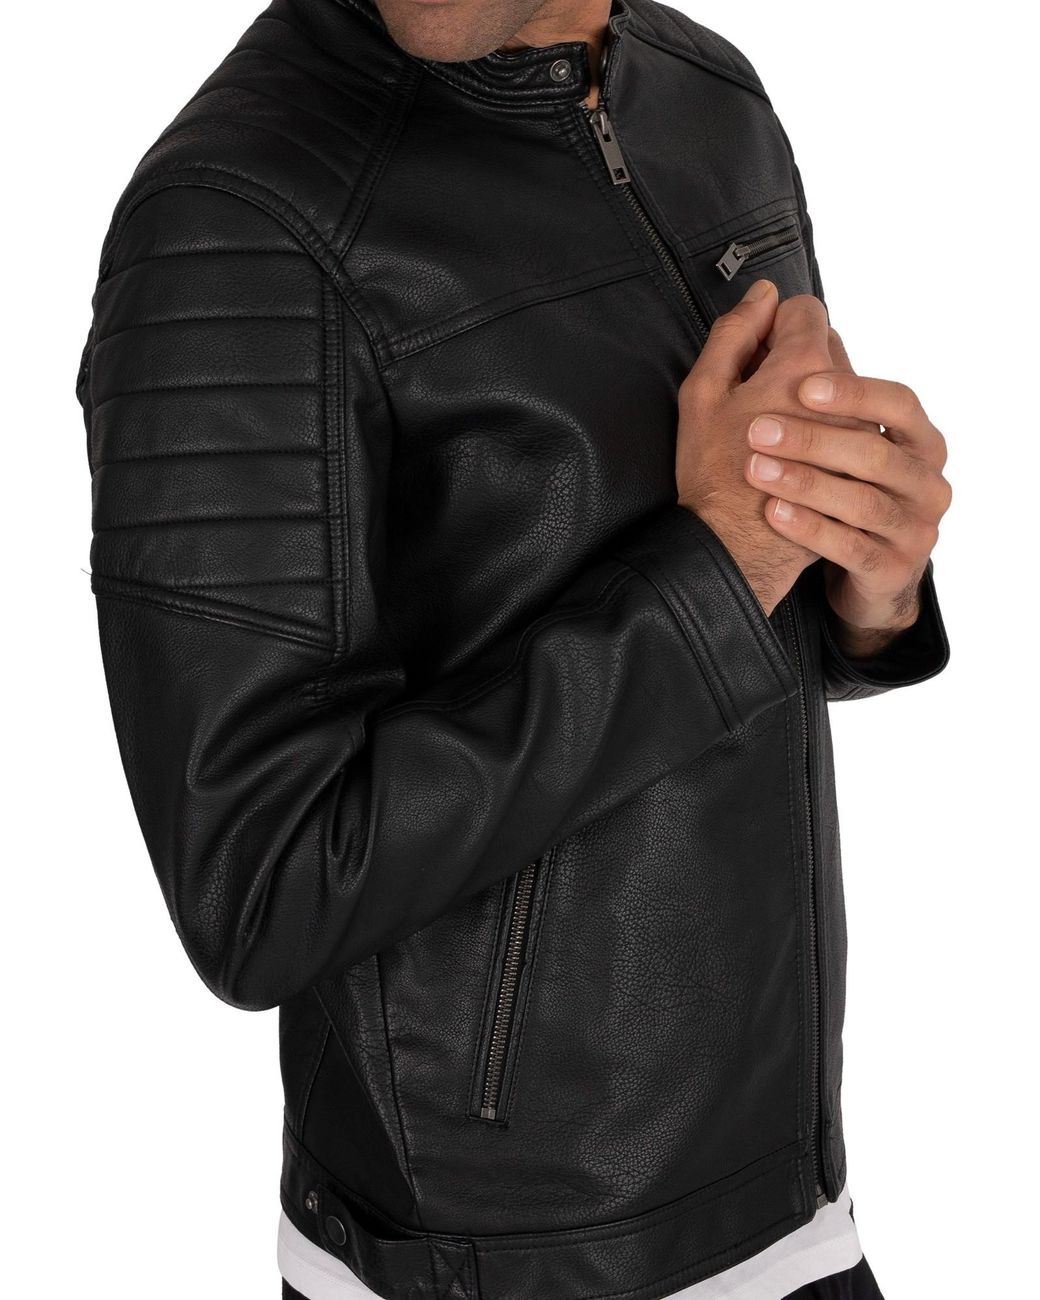 Jack & Jones Rocky Leather Jacket in Black for Men | Lyst Canada